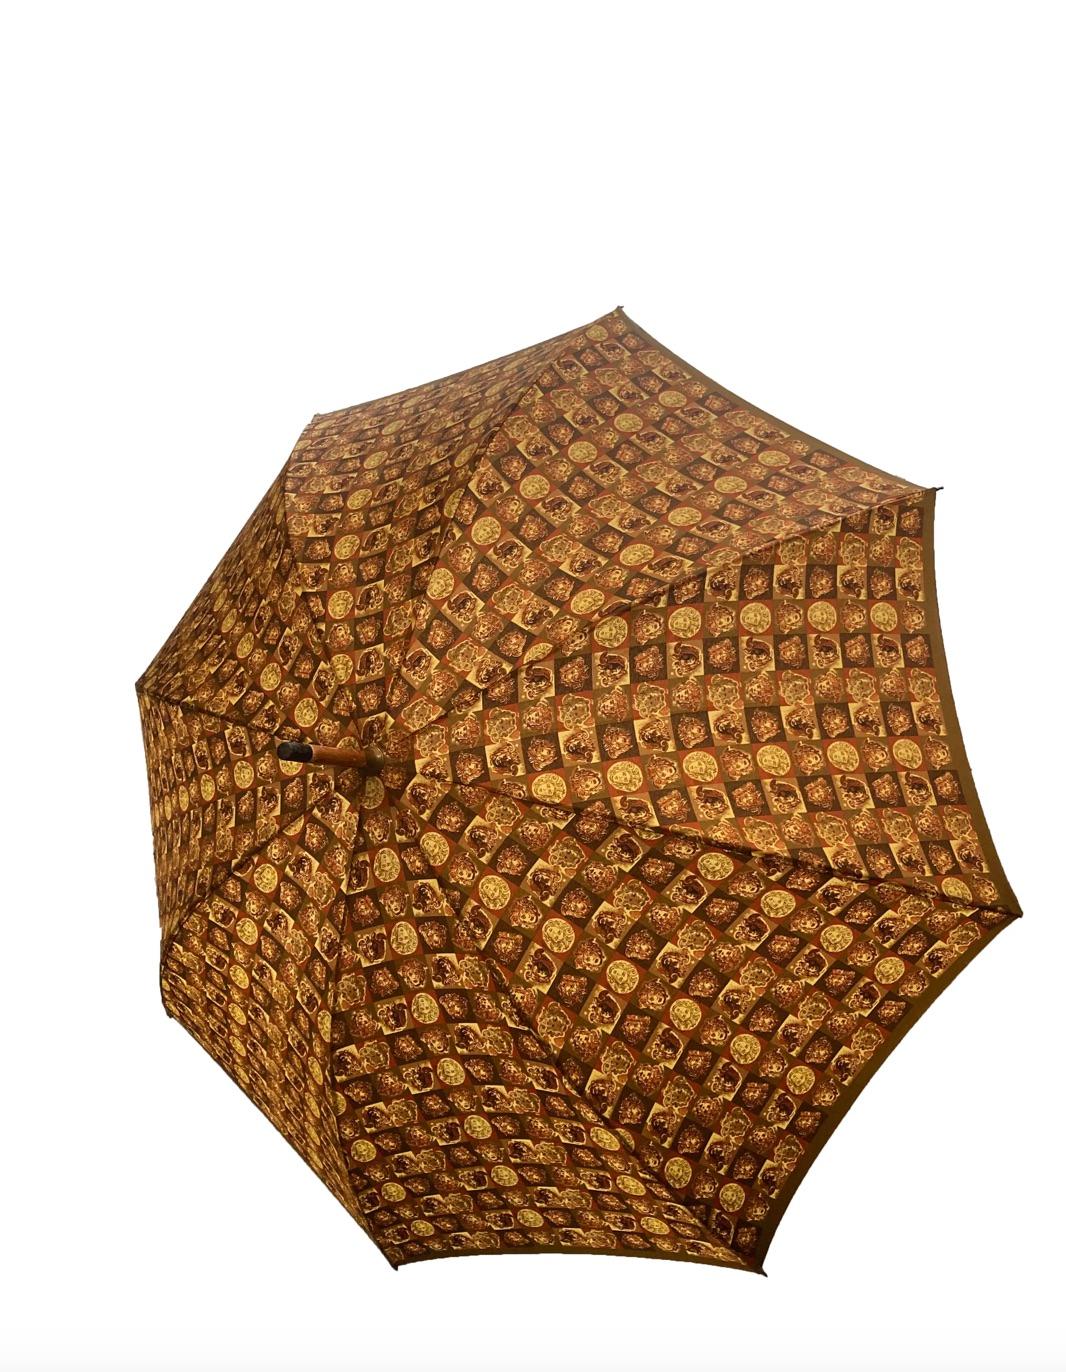 Parapluie vintage Gianni Versace de la marque éponyme. Manche en bois brun doré avec poignée en bois crochetée, ornée du logo de la tête de méduse découpée, entourée d'une bordure de style grec en métal doré. La tige en nylon kaki arbore un motif de